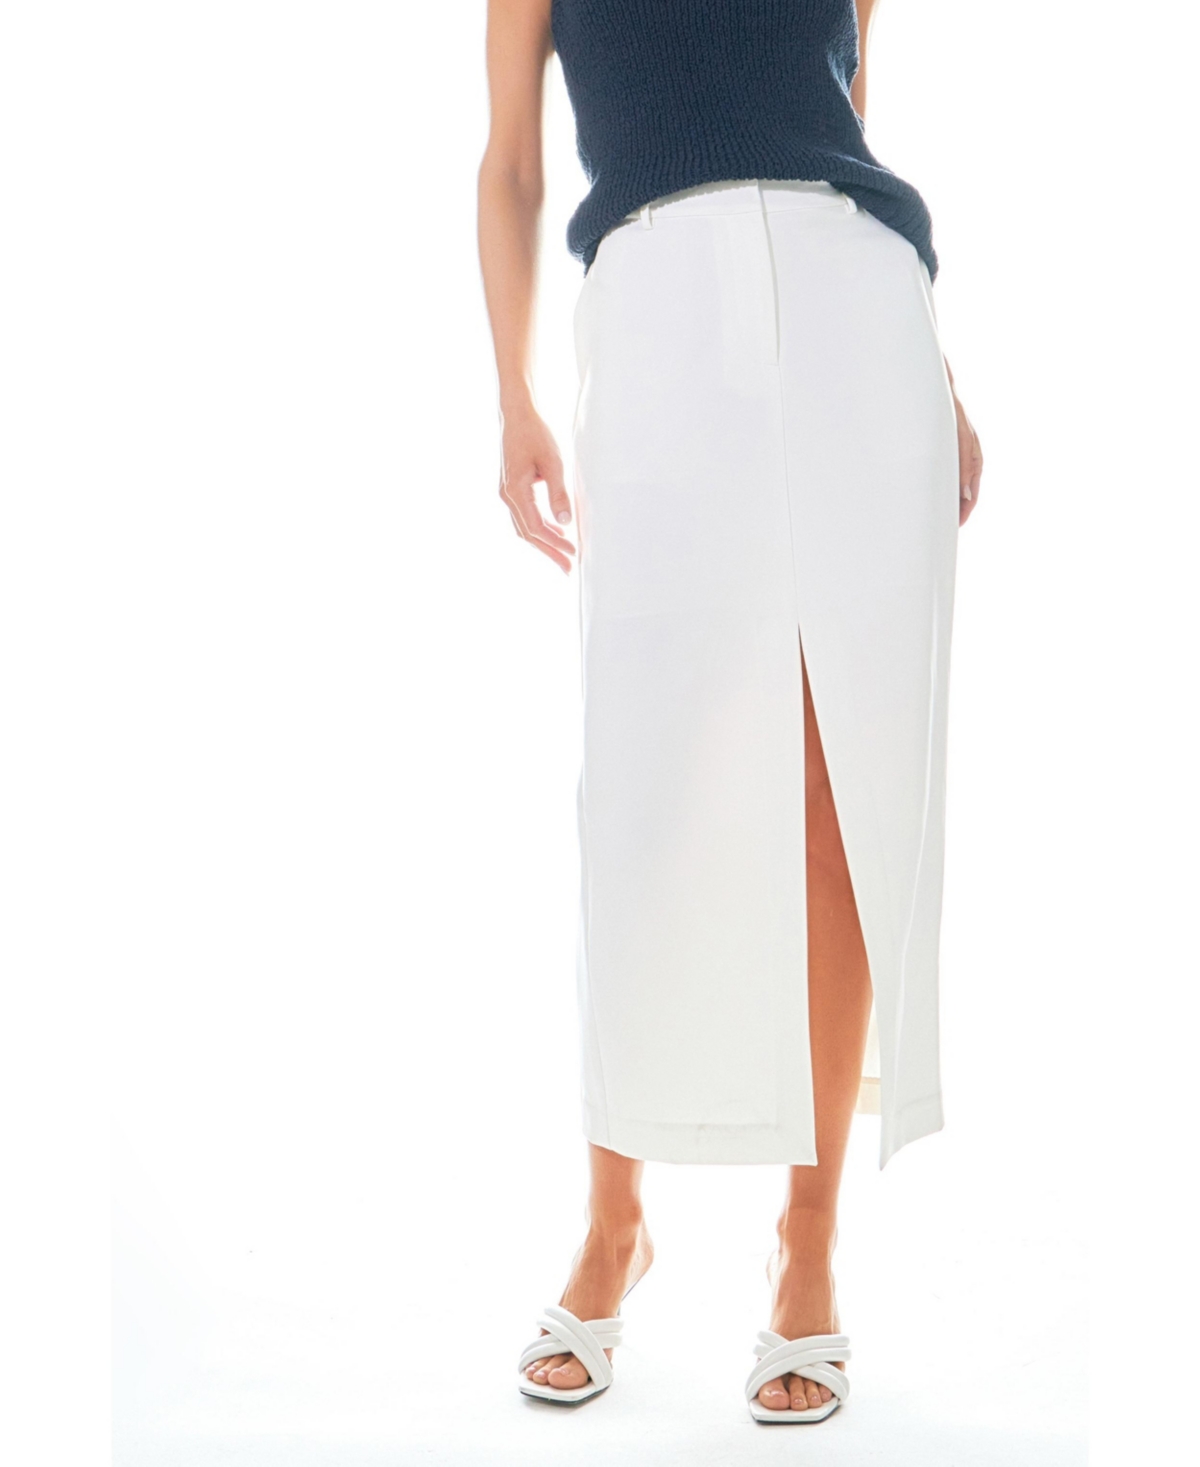 Women's Mid-Waisted Front Slit Maxi Skirt - White